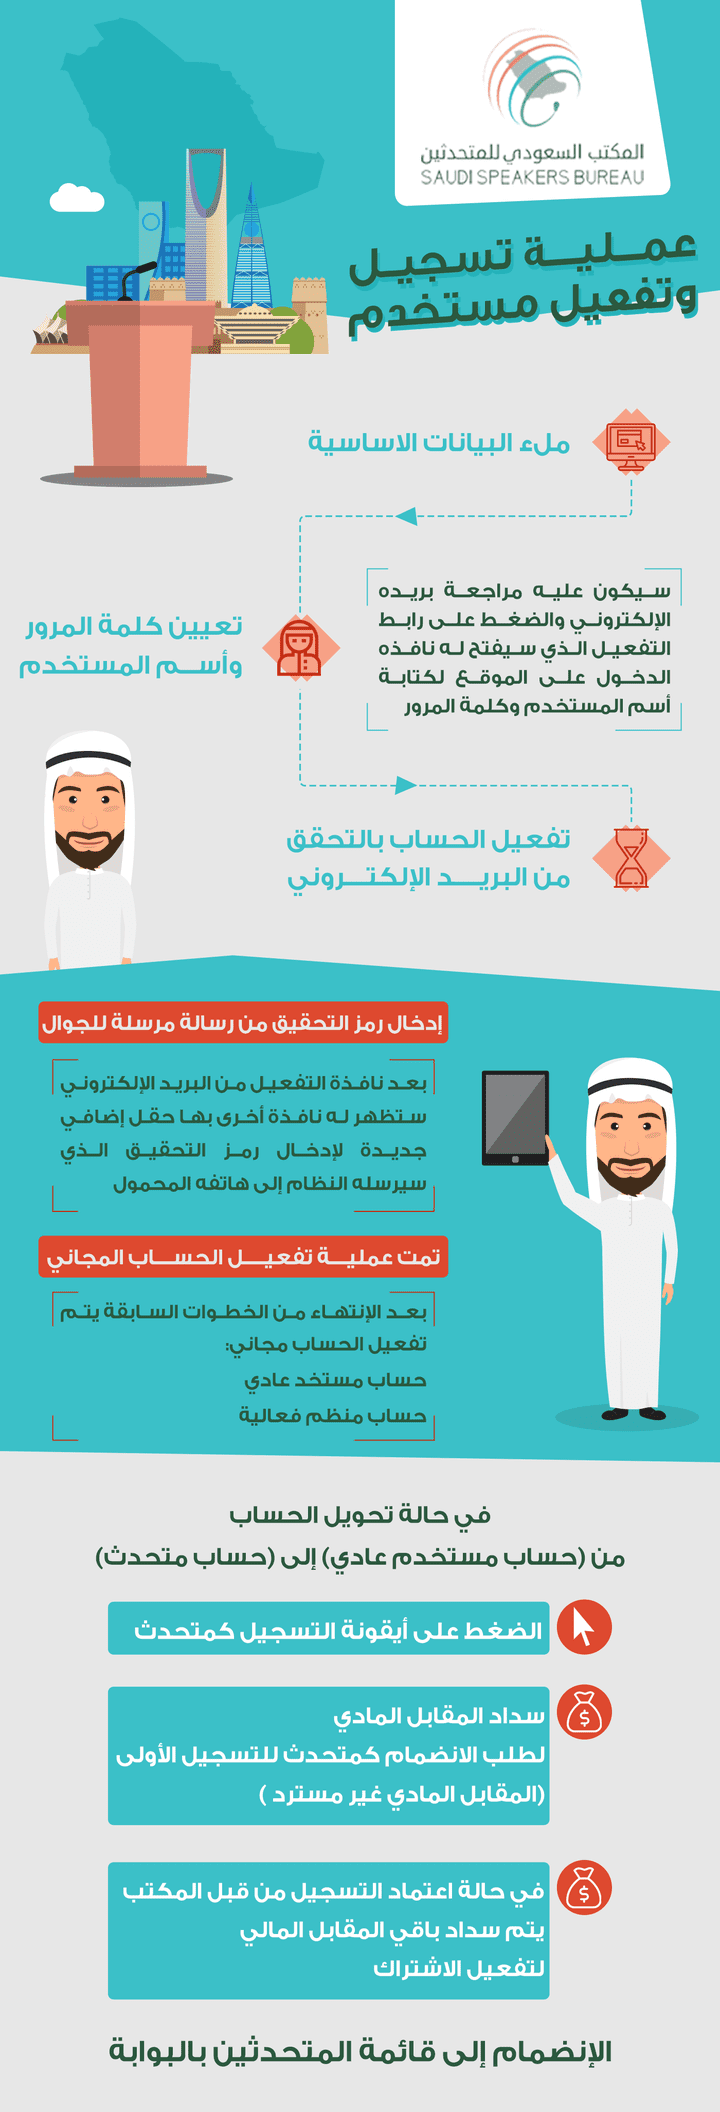 المكتب السعودي للمتحدثين - عملية التسجيل